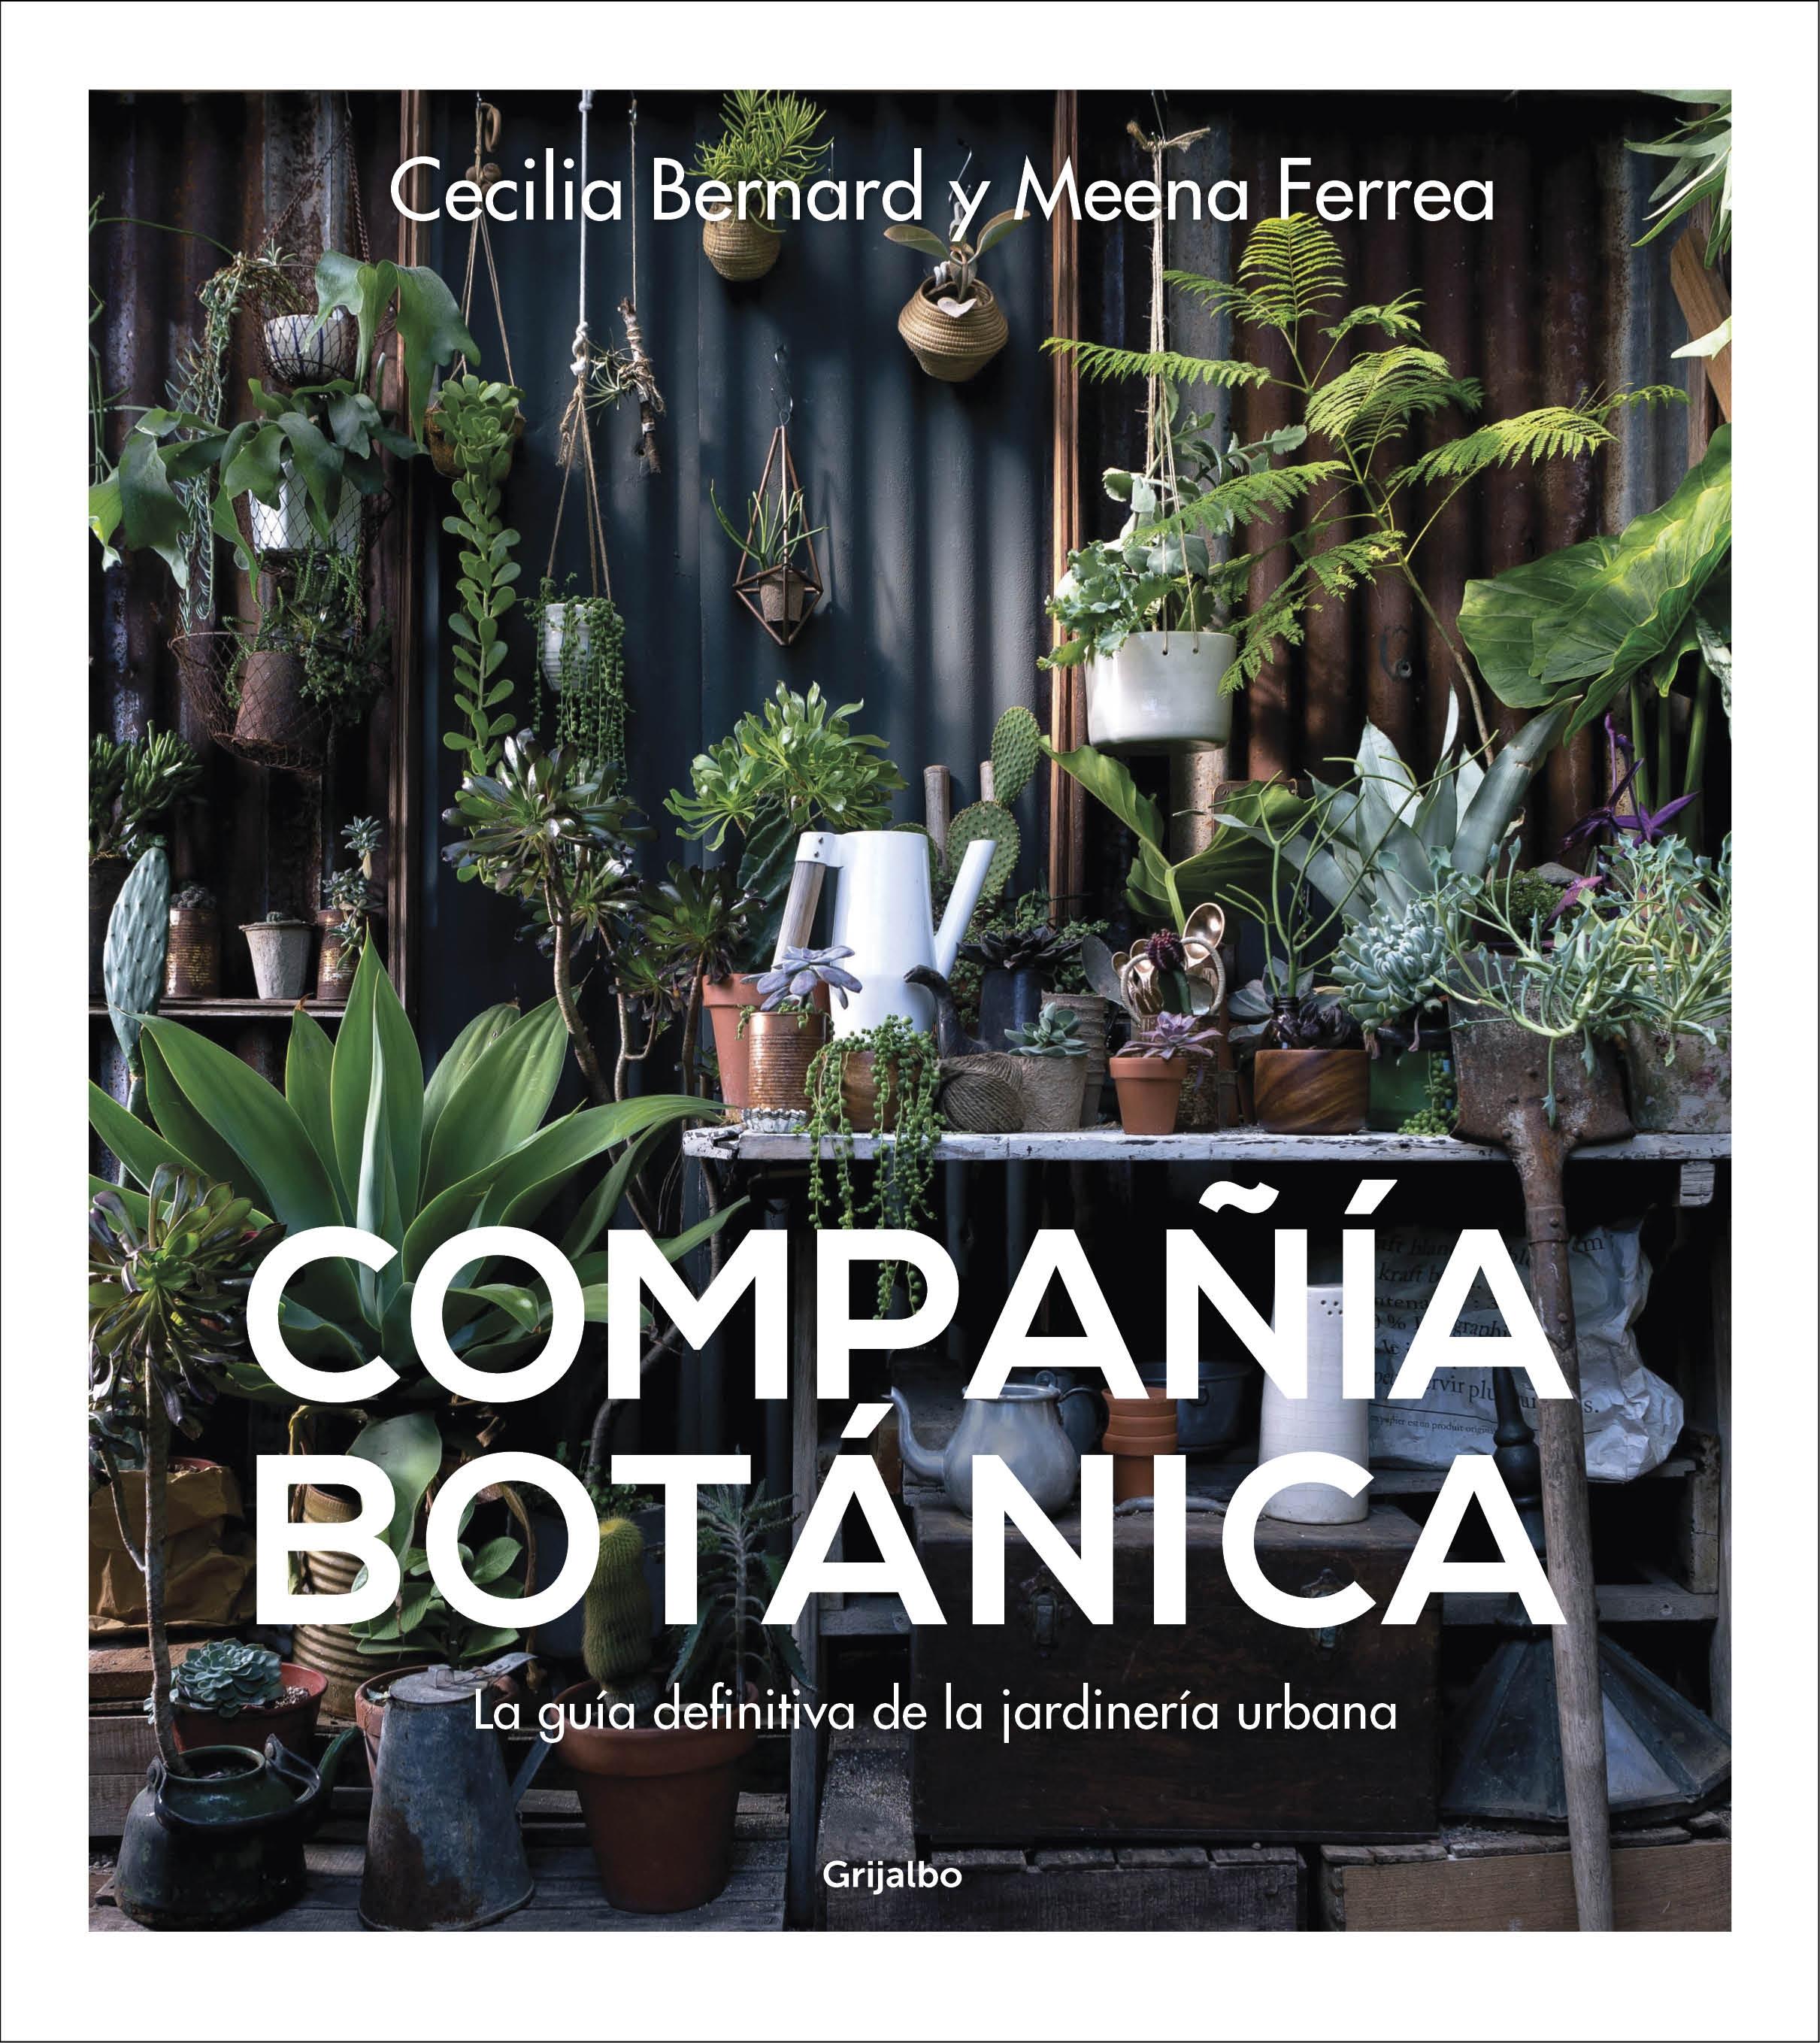 Compañía botánica "La guía definitiva de la jardinería urbana"